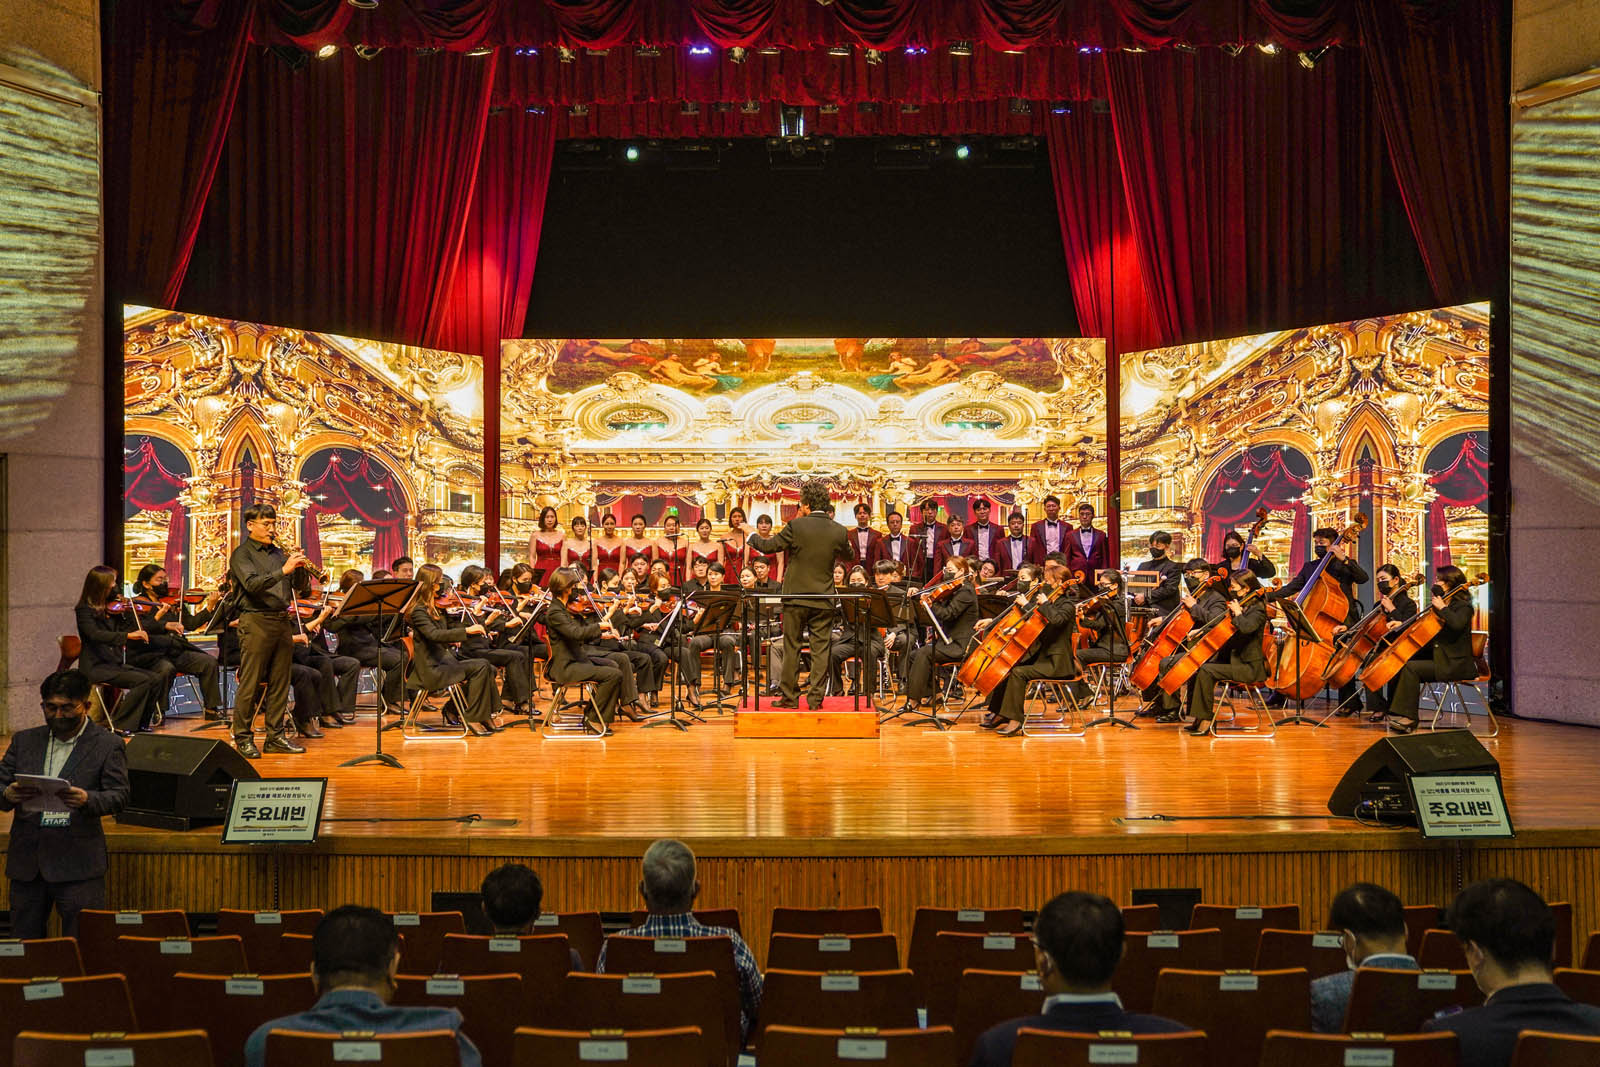 (07.01.문화예술회관) 취임식전 무대에서 오케스트라를 하는 모습